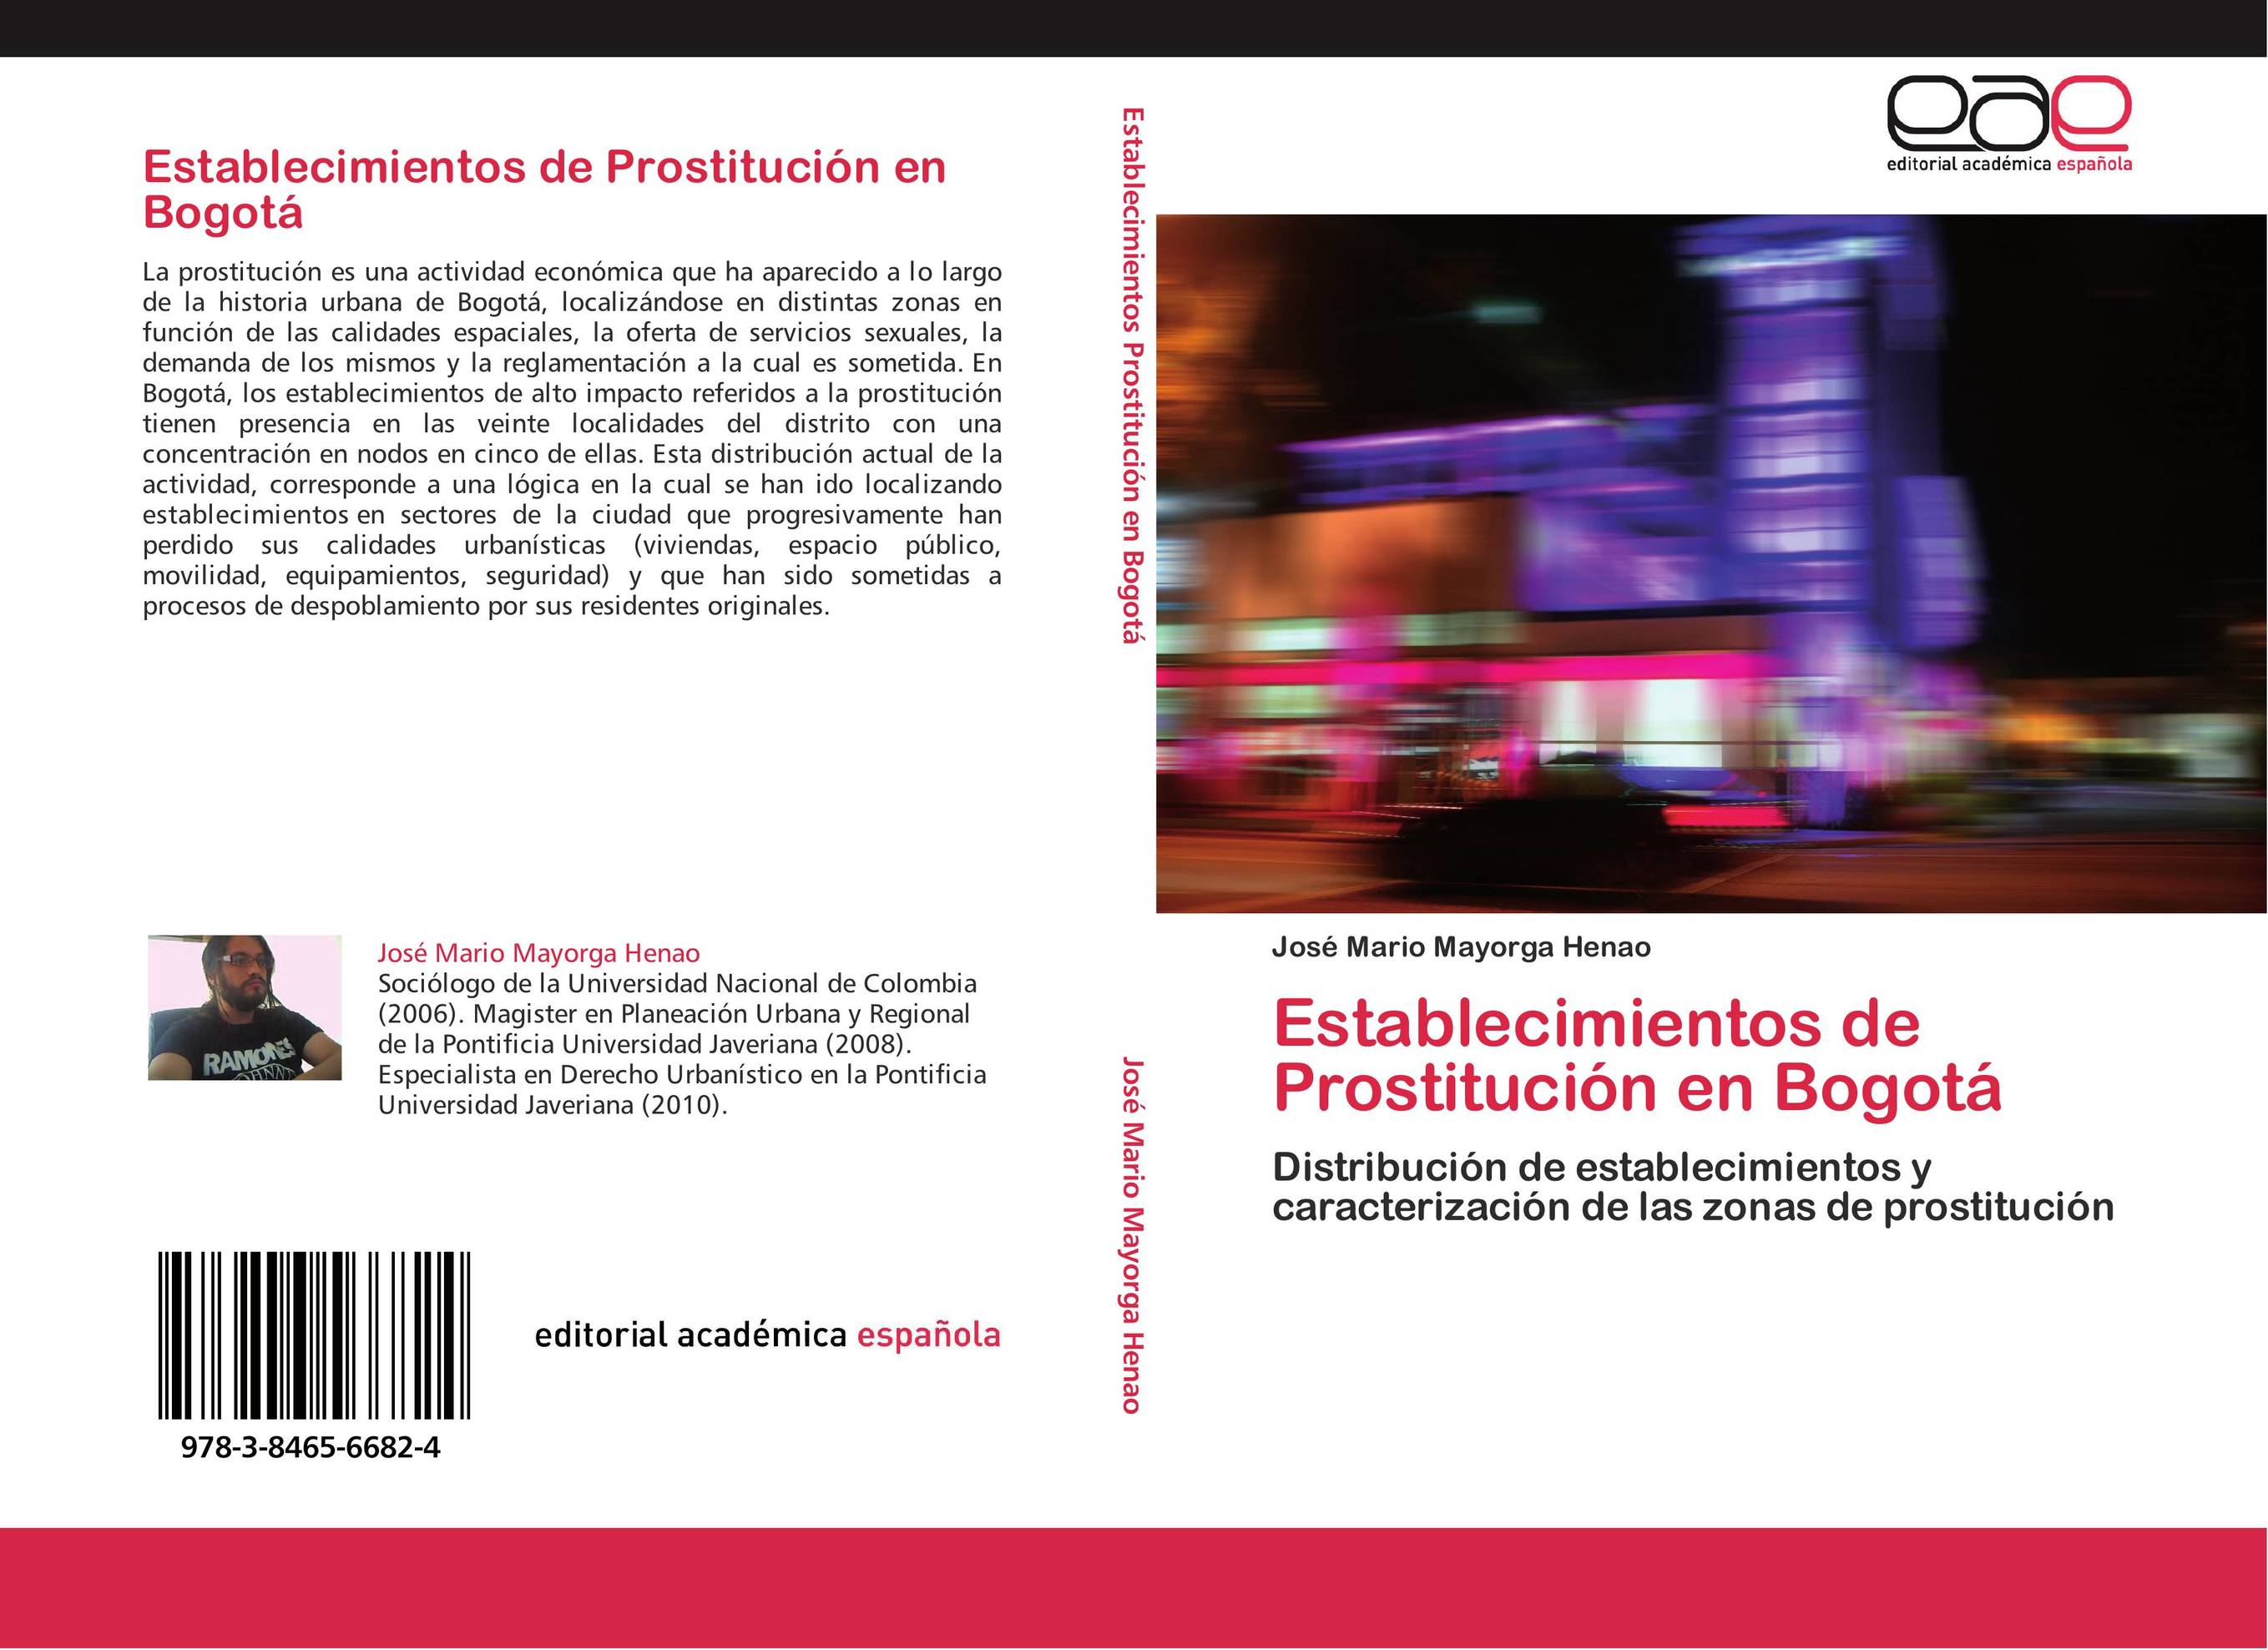 Establecimientos de Prostitución en Bogotá